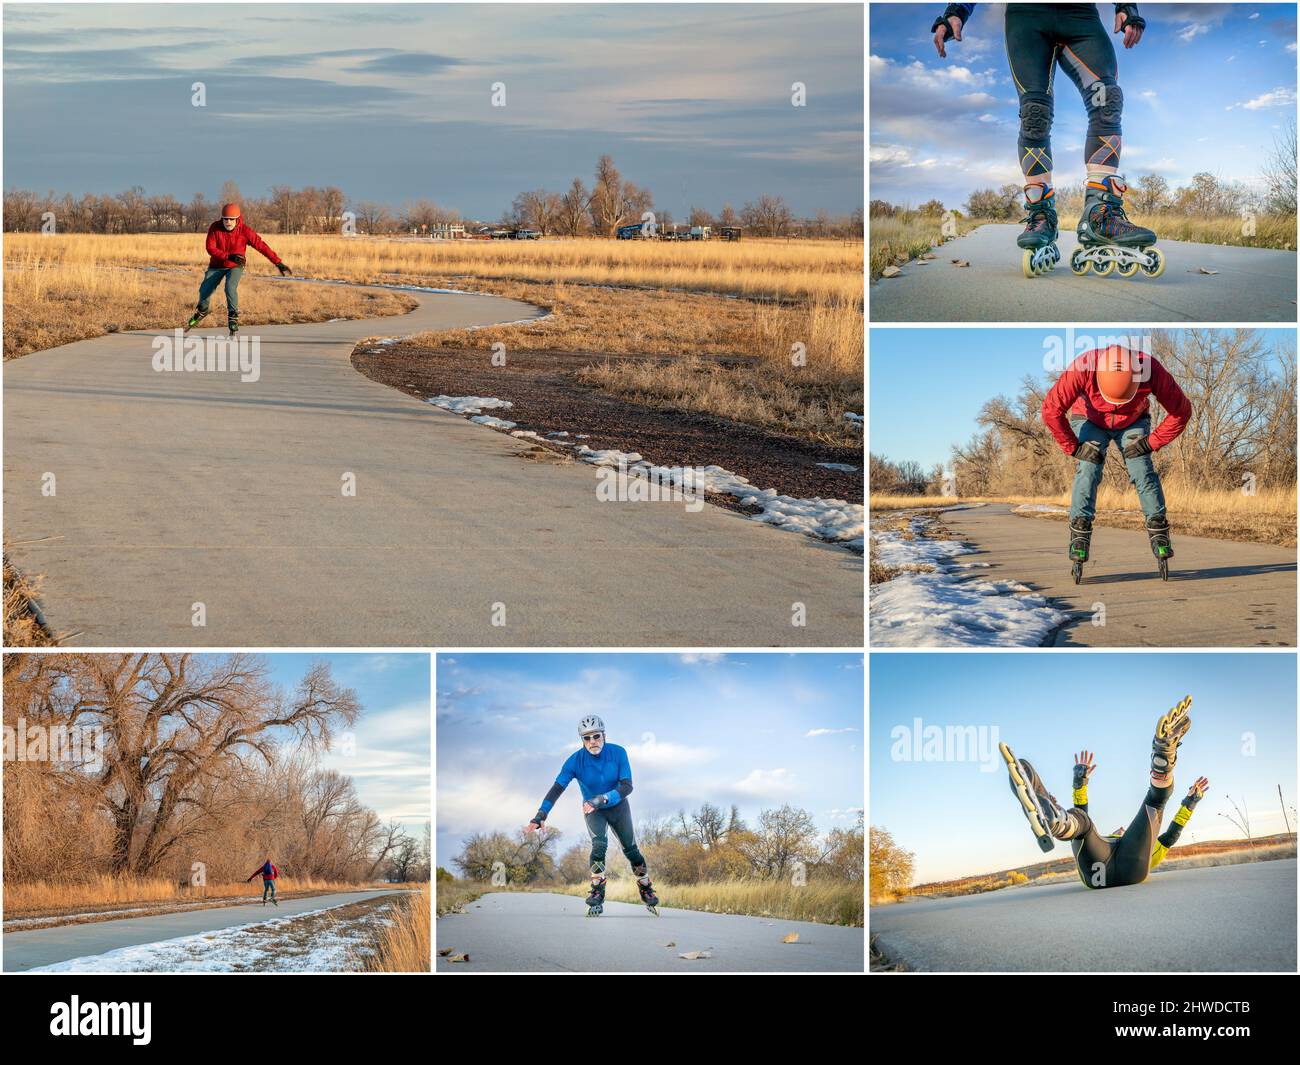 Patinage en ligne sur des pistes cyclables dans la région de fort Collins, dans le nord du Colorado - collection d'images présentant le même modèle masculin senior, automne et hiver Banque D'Images